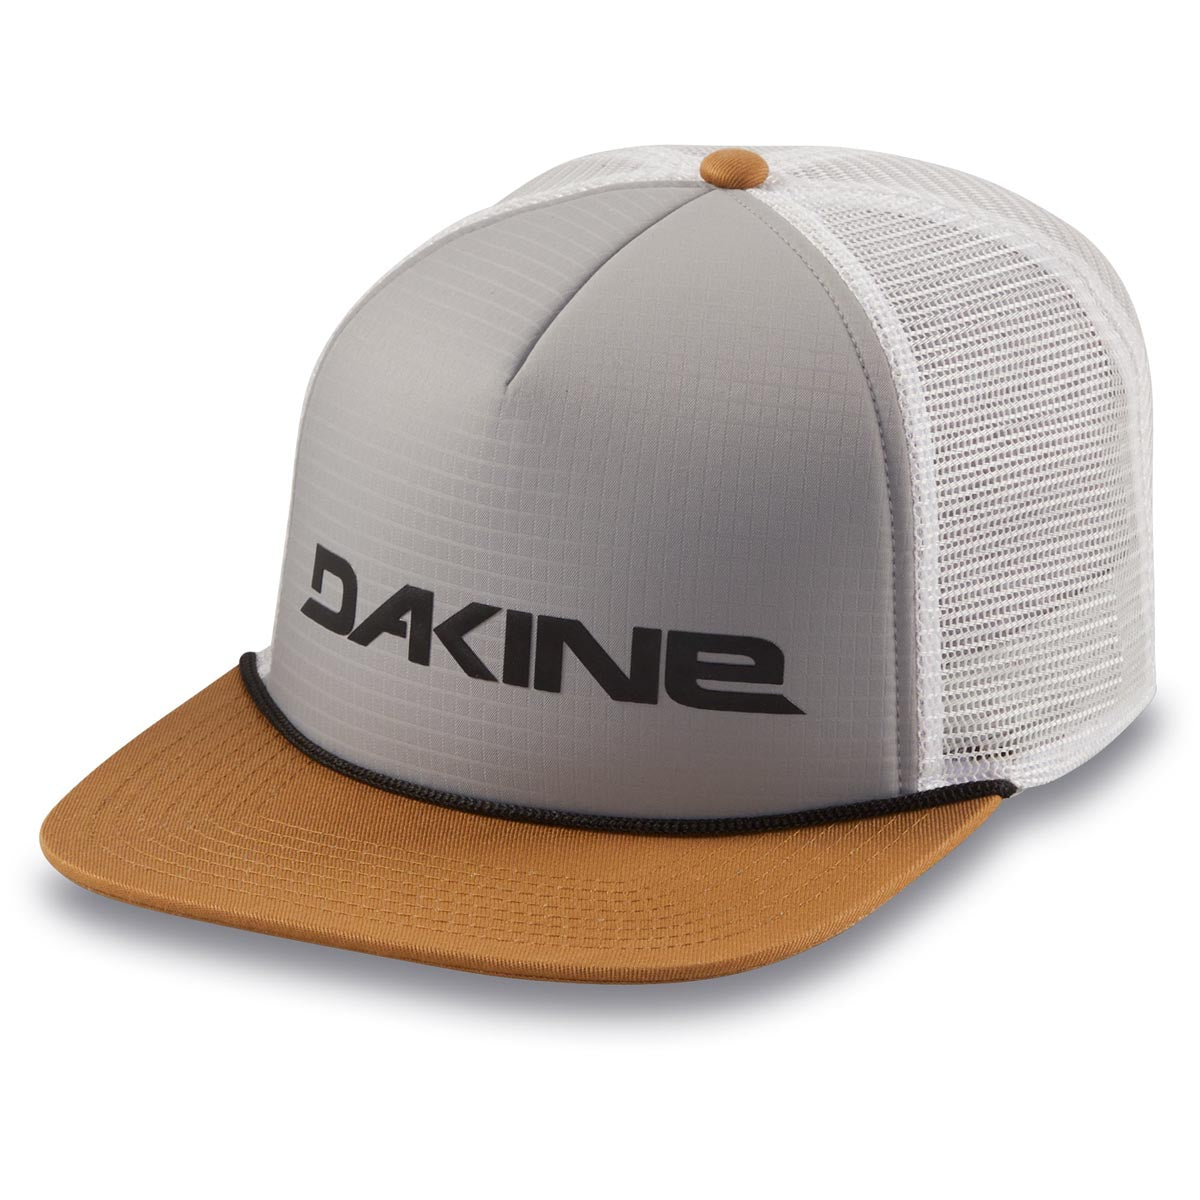 Dakine Traveler Trucker Hat - Griffin image 1